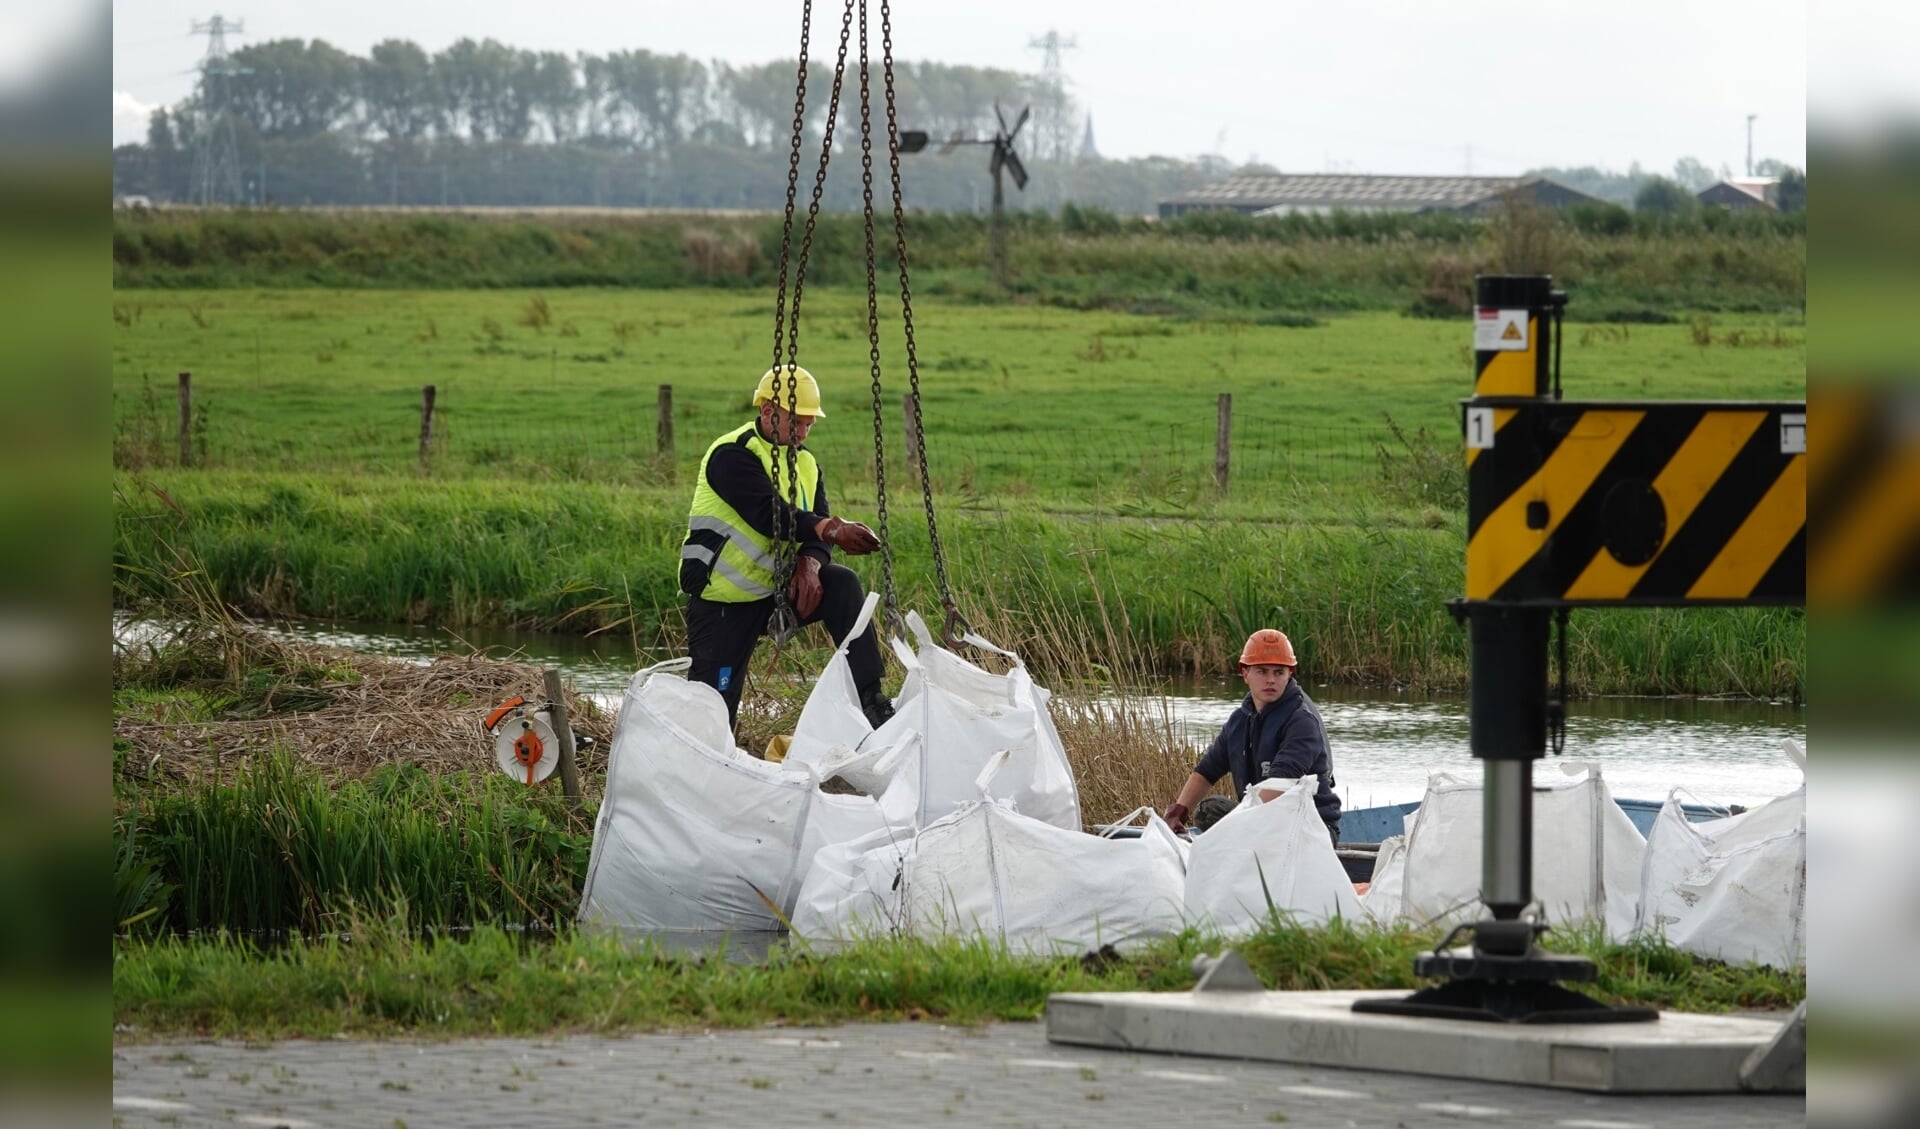 De sloot wordt afgedamd om te voorkomen dat het vervuilde water uit de sloot richting Binnenmeer of Uitgeestermeer stroomt.